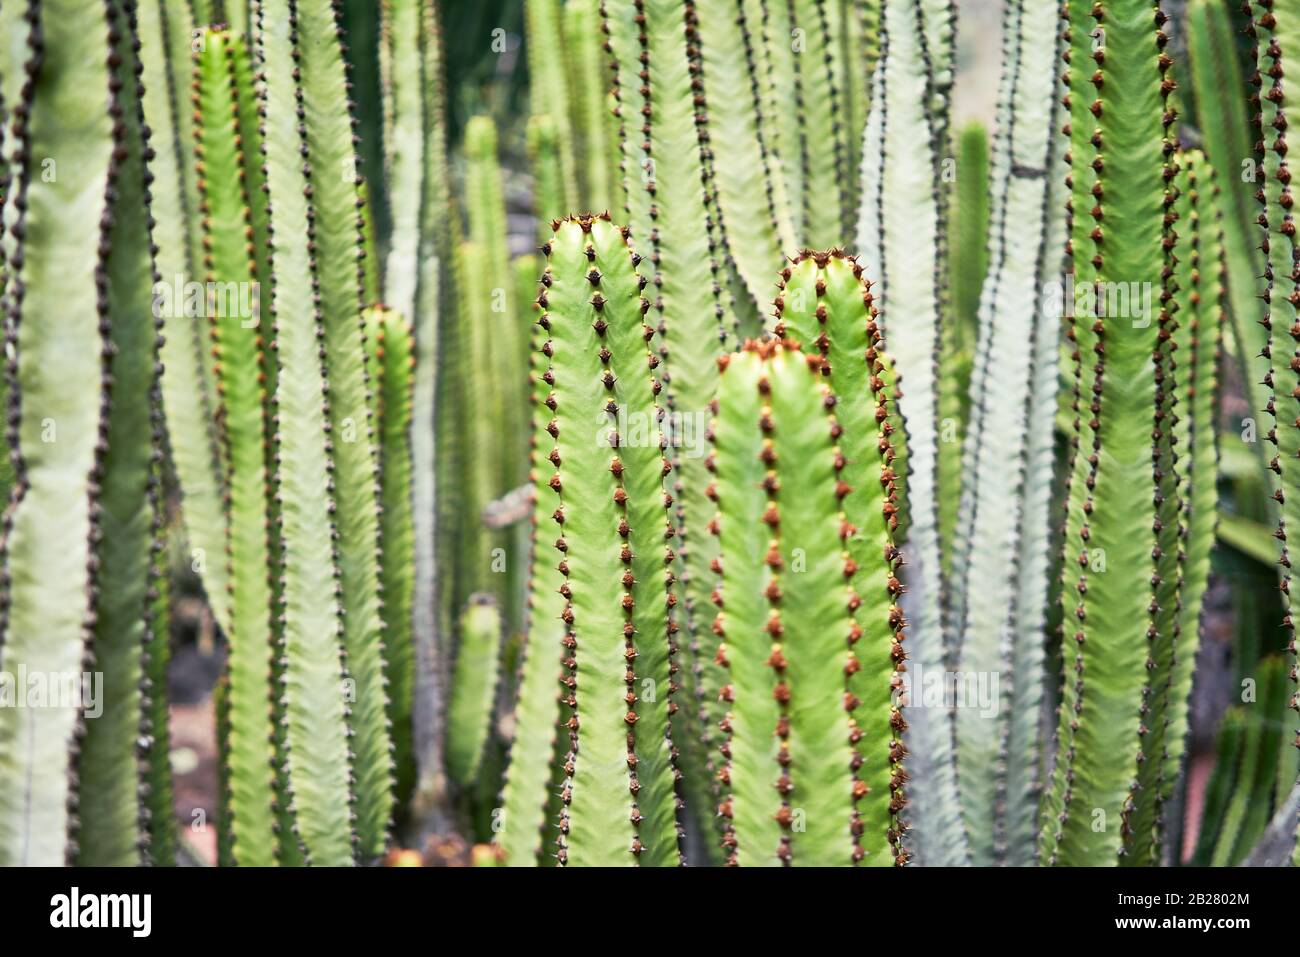 Close up of succulent green cactus at botanical garden Stock Photo